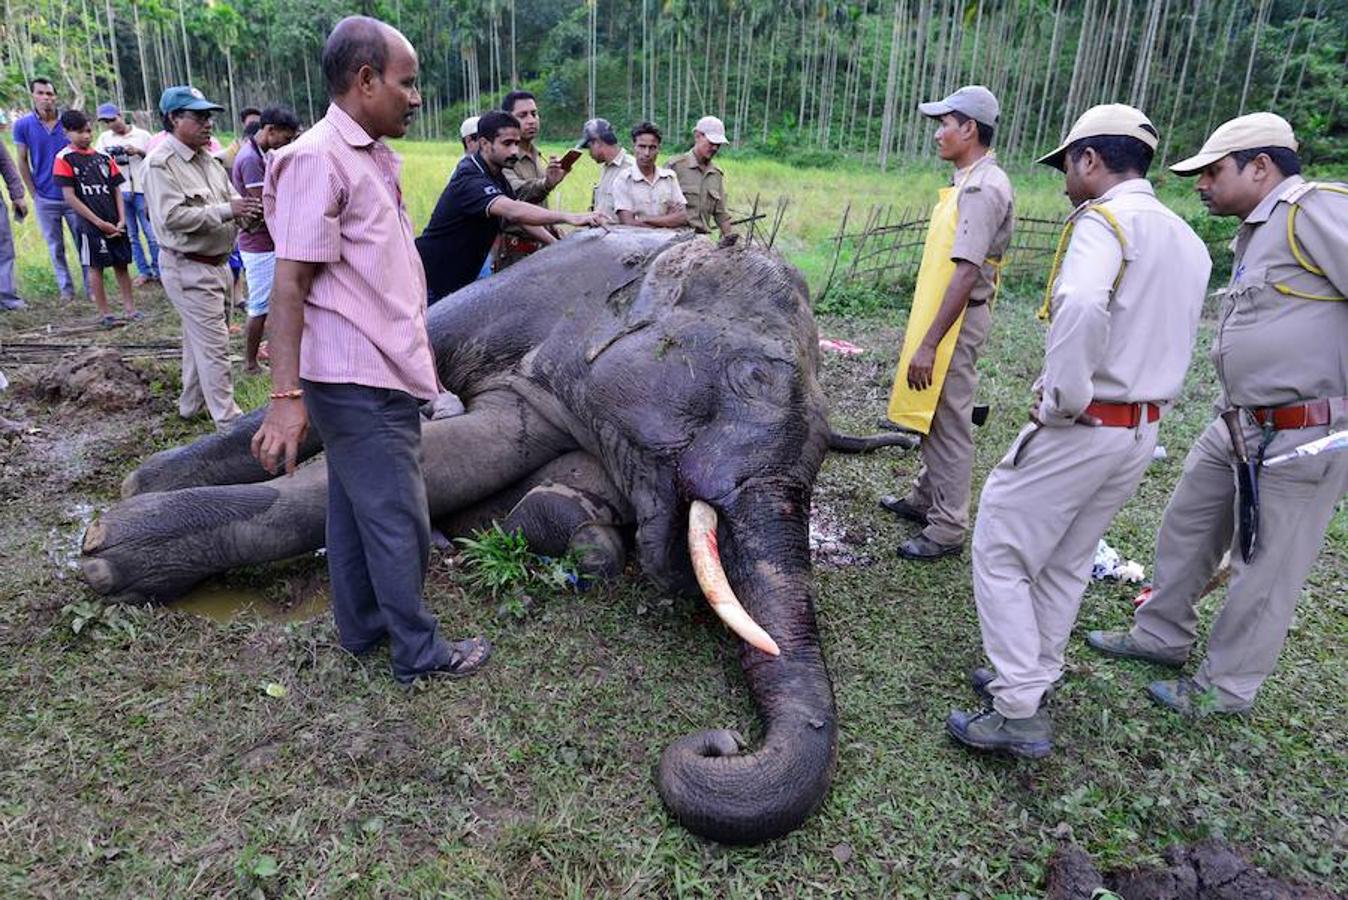 Muere envenenado un elefante en India. Veterinarios y guardias forestales examinan un elefante adulto tras morir envenenado en una aldea del estado de Assam (India).